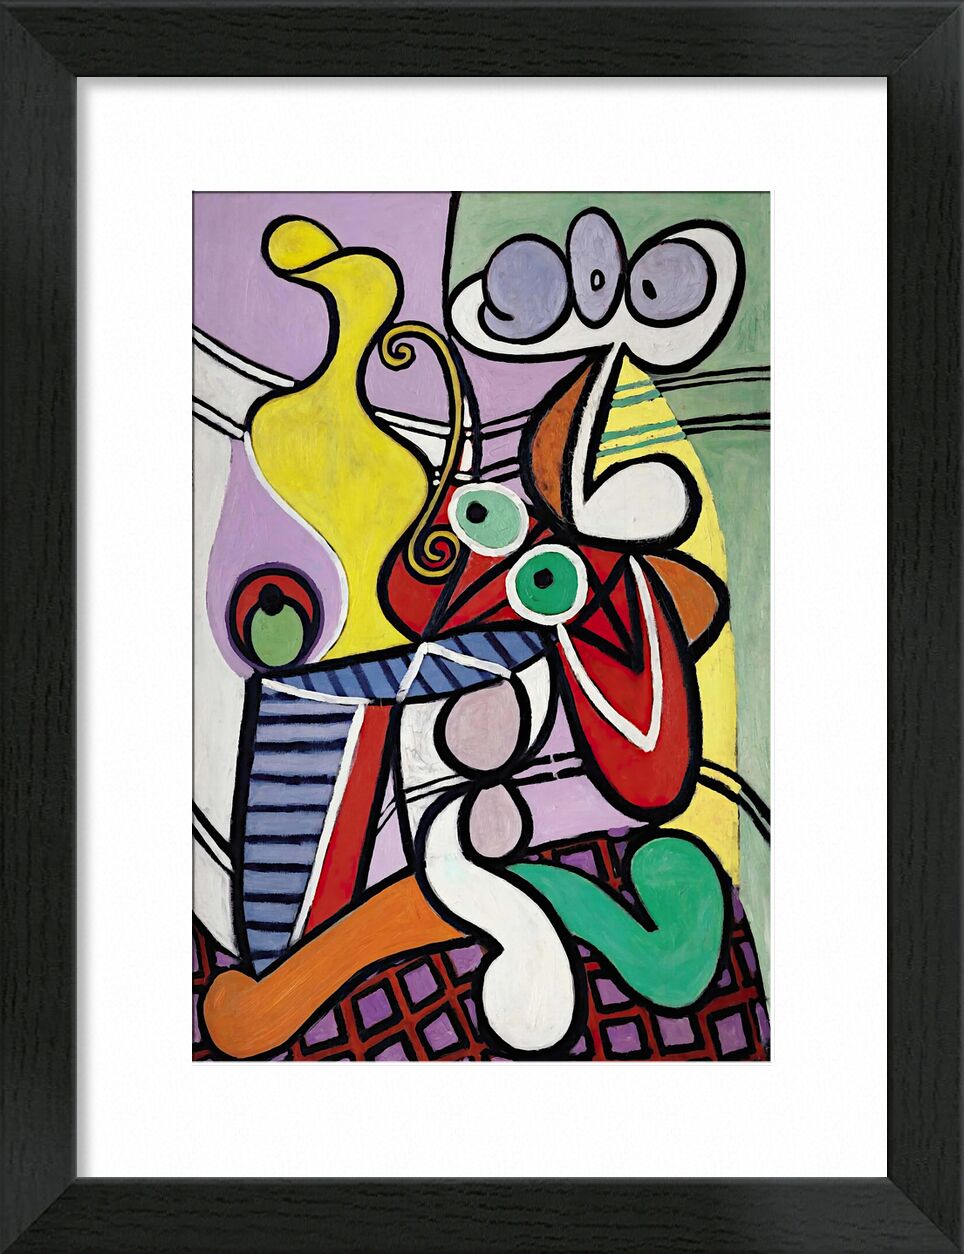 Large Still Life with Pedestal Table - Picasso von Bildende Kunst, Prodi Art, Säulentisch, Stillleben, Picasso, abstrakt, Malerei